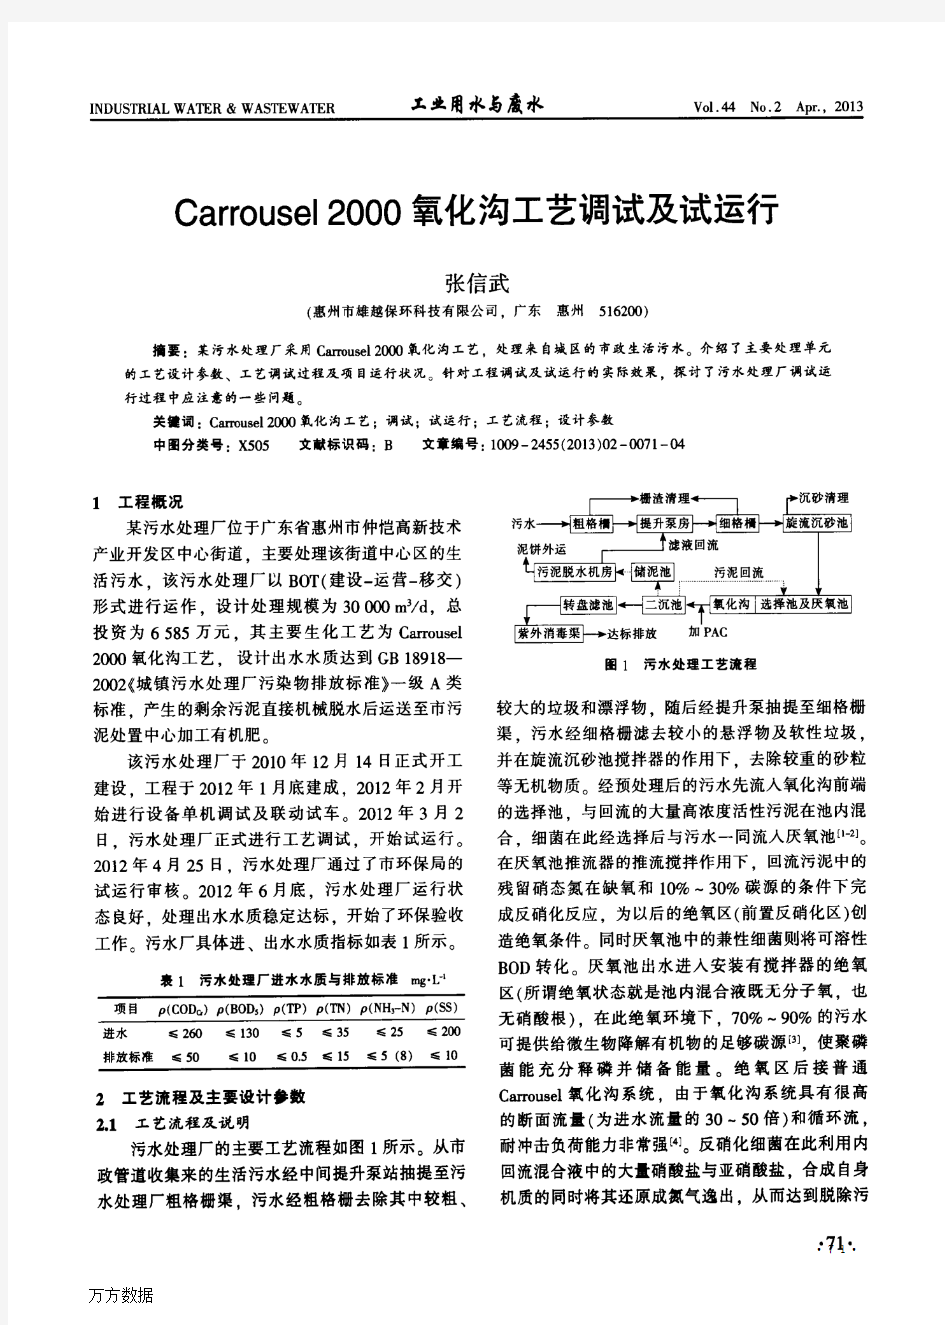 Carrousel+2000氧化沟工艺调试及试运行